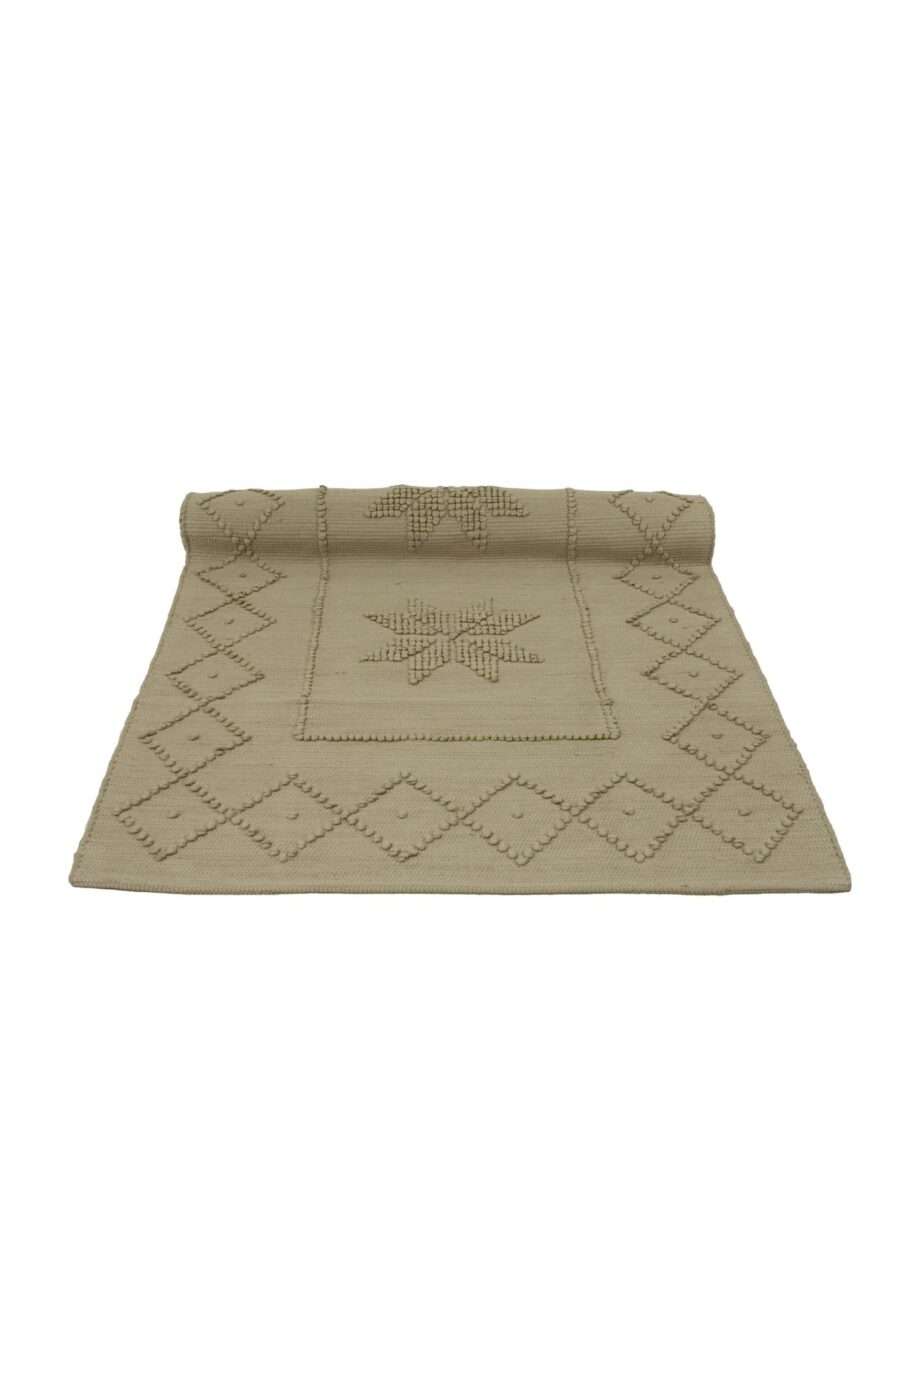 star latte woven cotton floor mat small